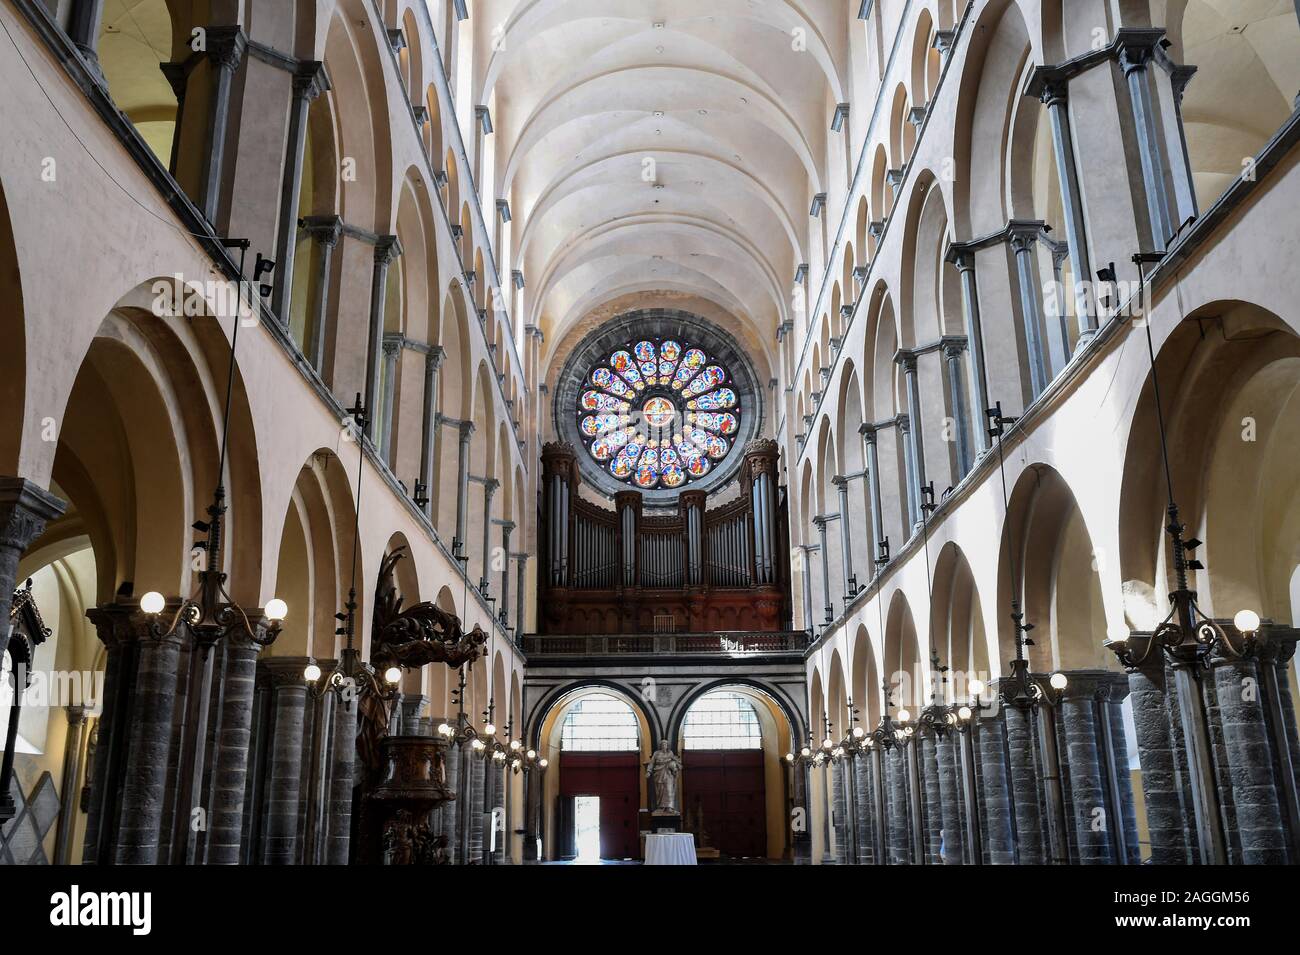 Belgien, Tournai: innenraum der Kathedrale von Tournai oder die Kathedrale Unserer Lieben Frau (Französisch: "Notre-Dame de Tournai"), registriert als UNESCO-Welterbe Stockfoto